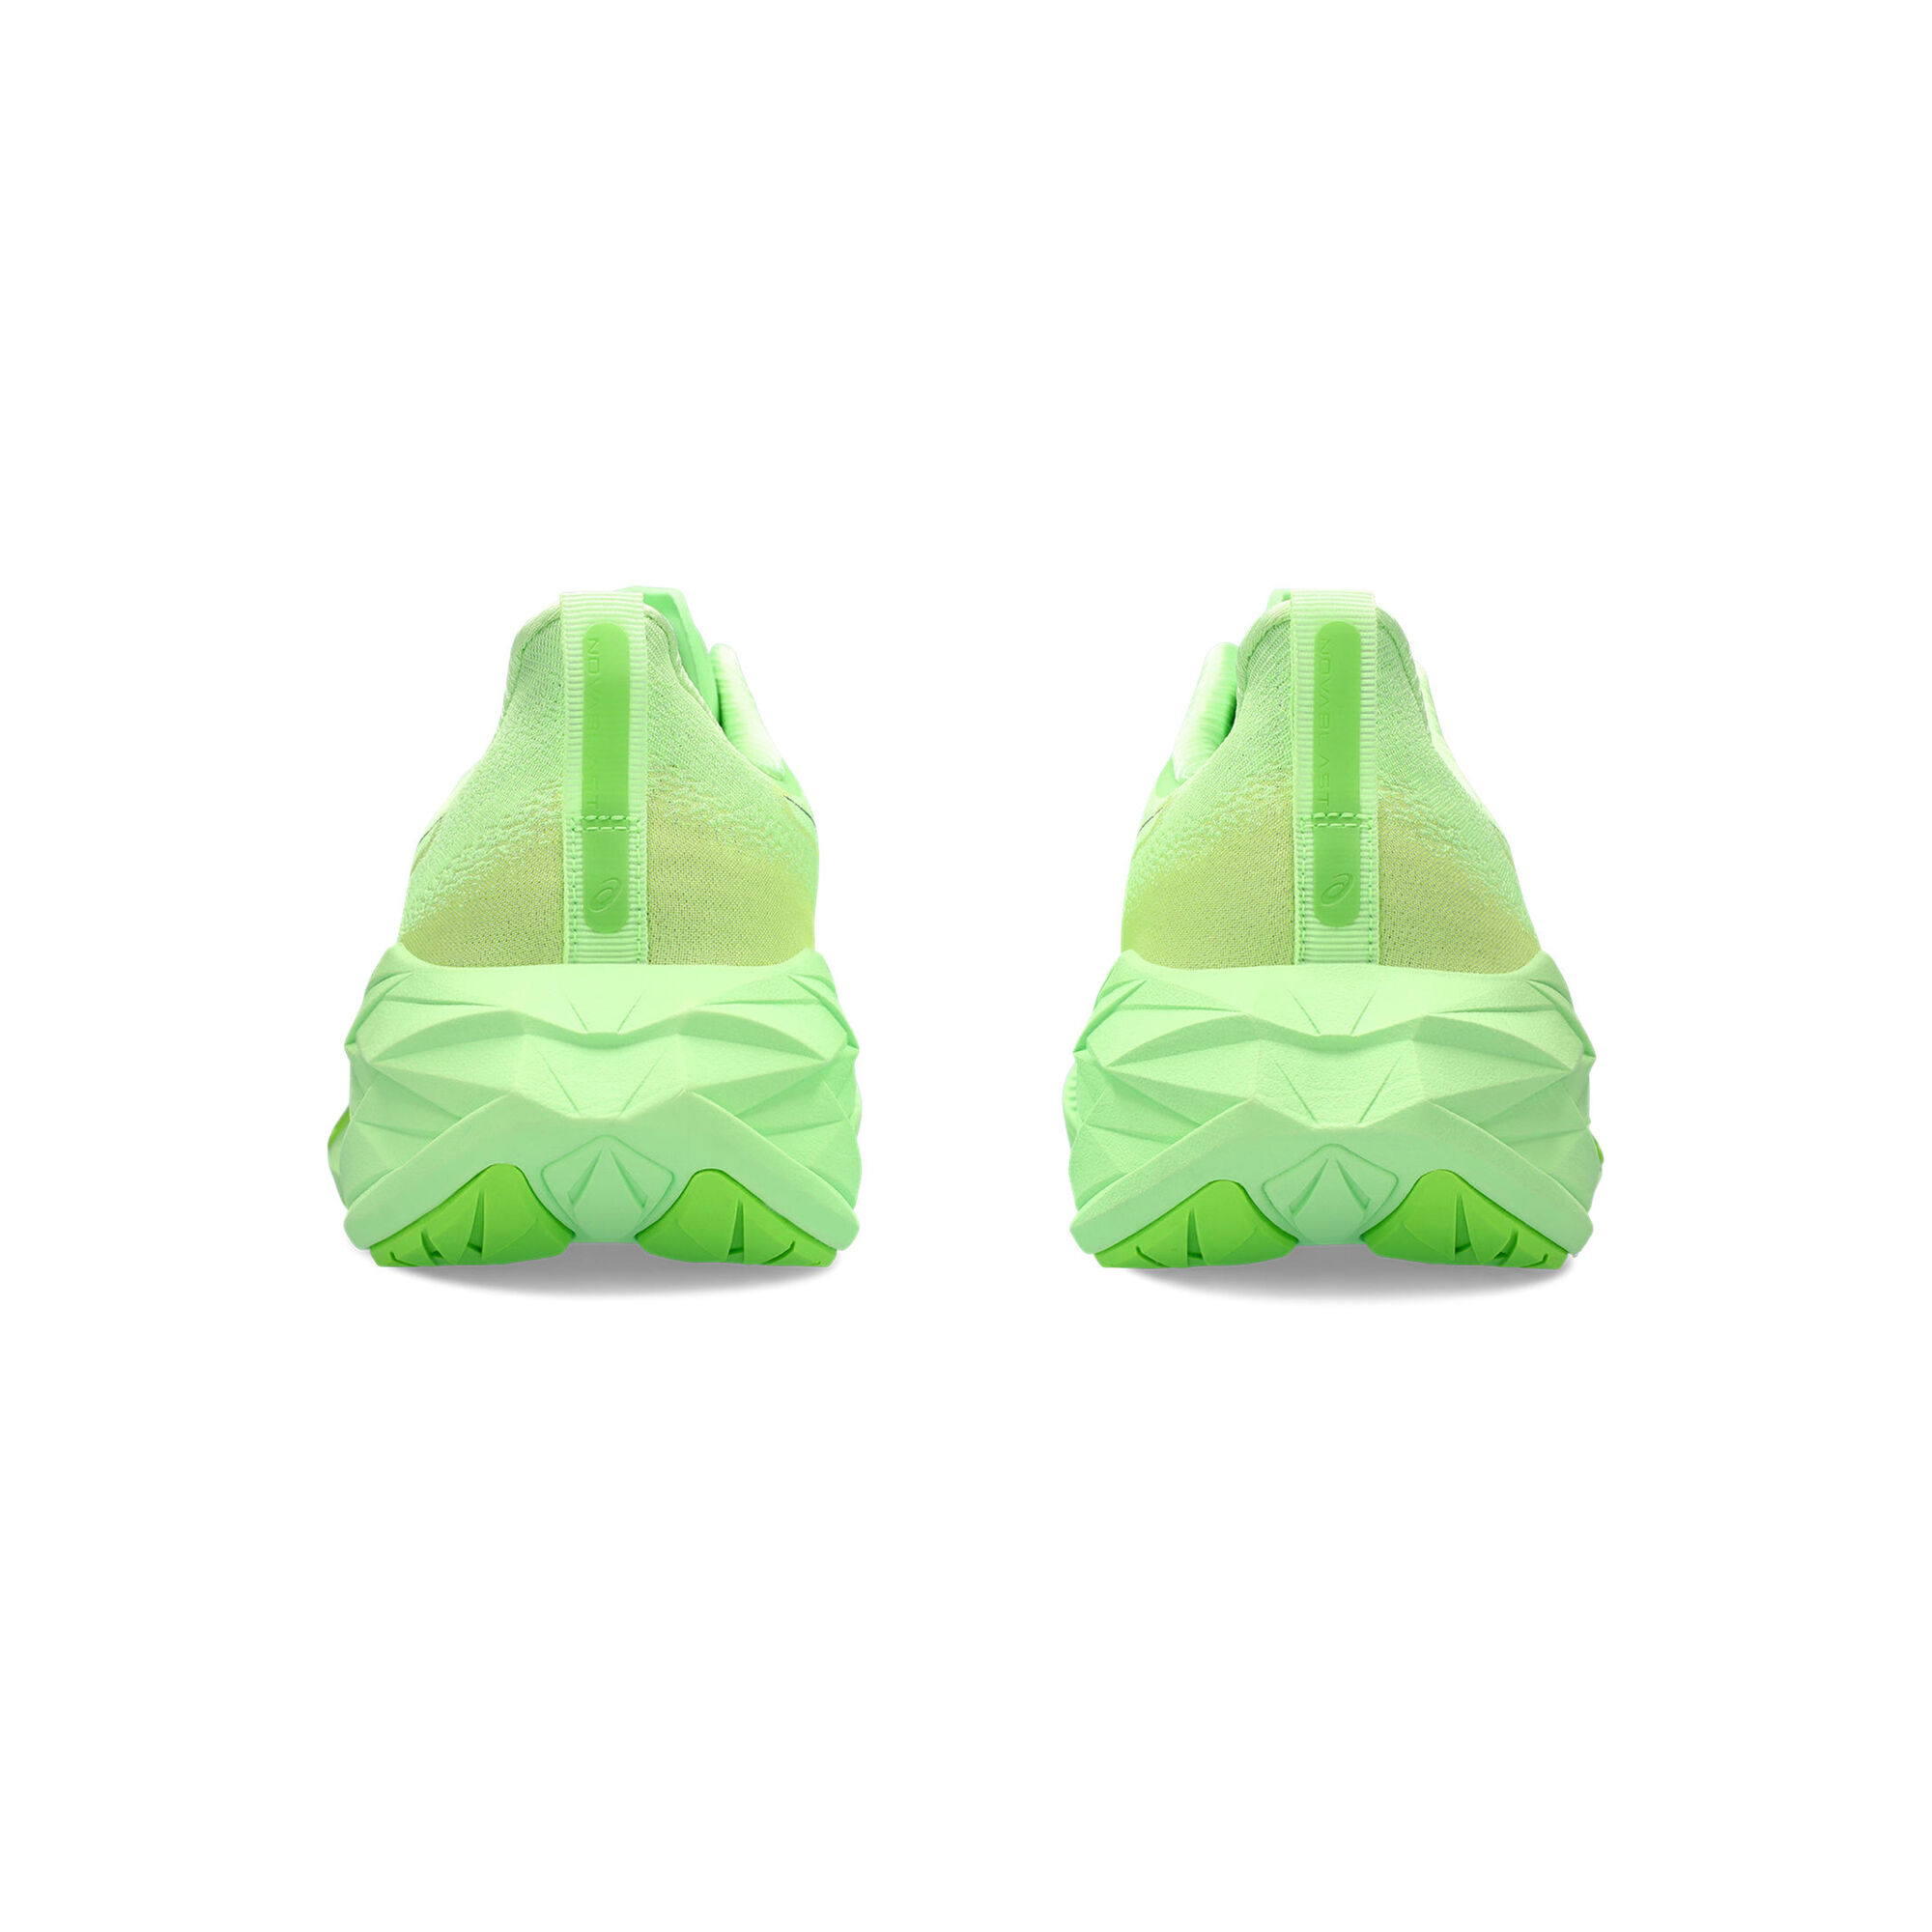 Buy ASICS Novablast 4 Neutral Running Shoe Men Neon Green online